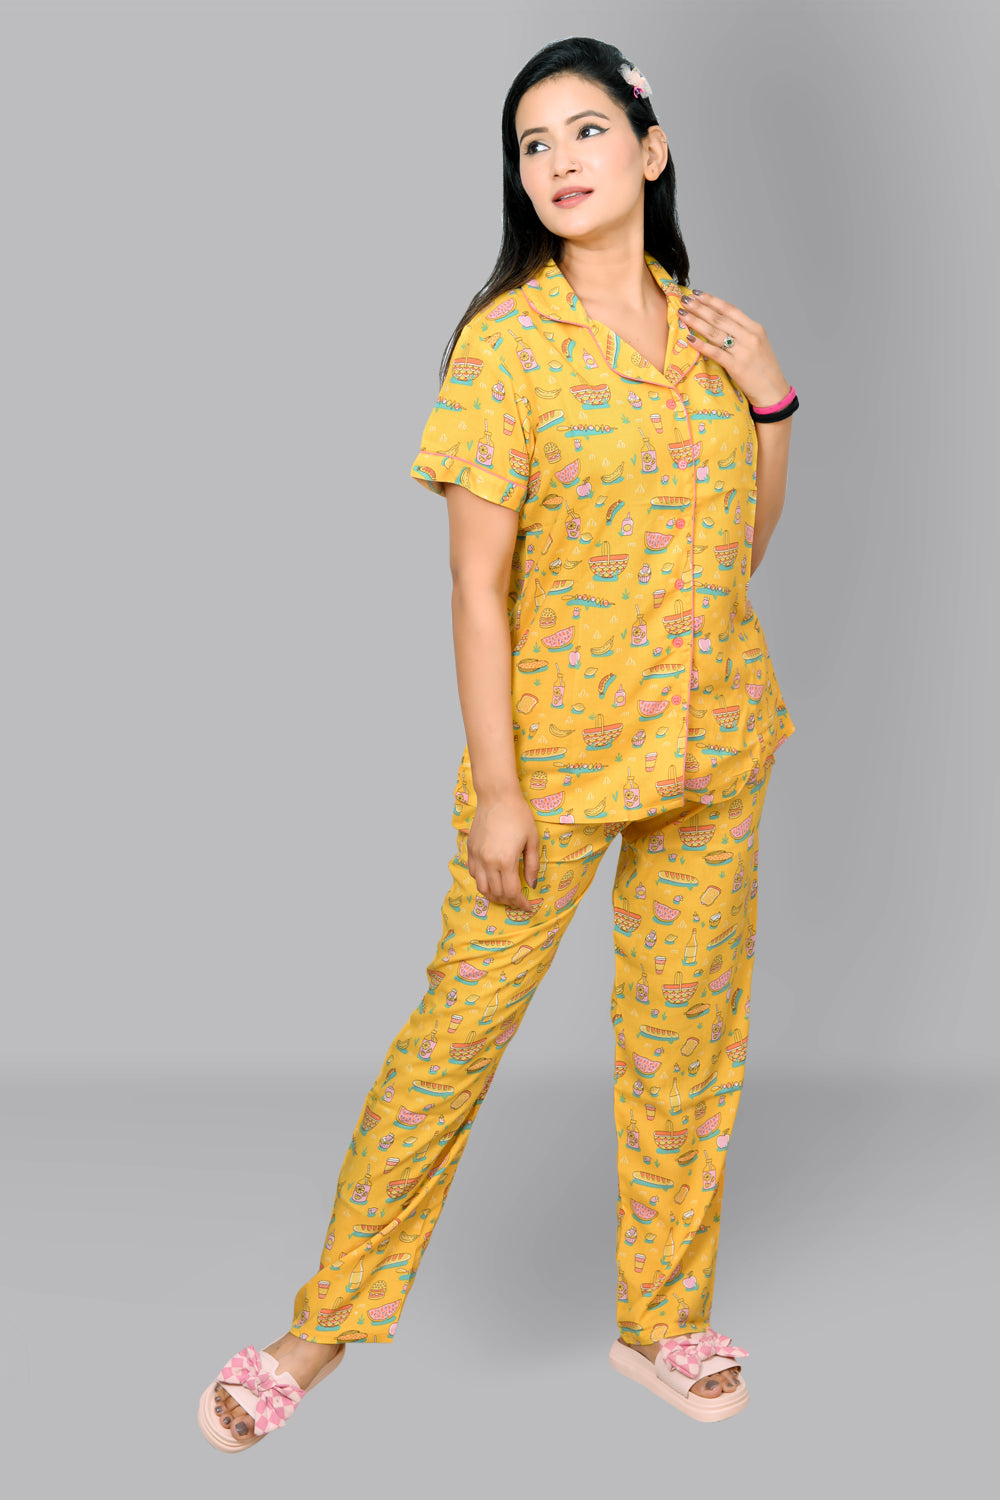 Best Fruit Print Womens Summer Nightwear | Fruit Print Pajamas